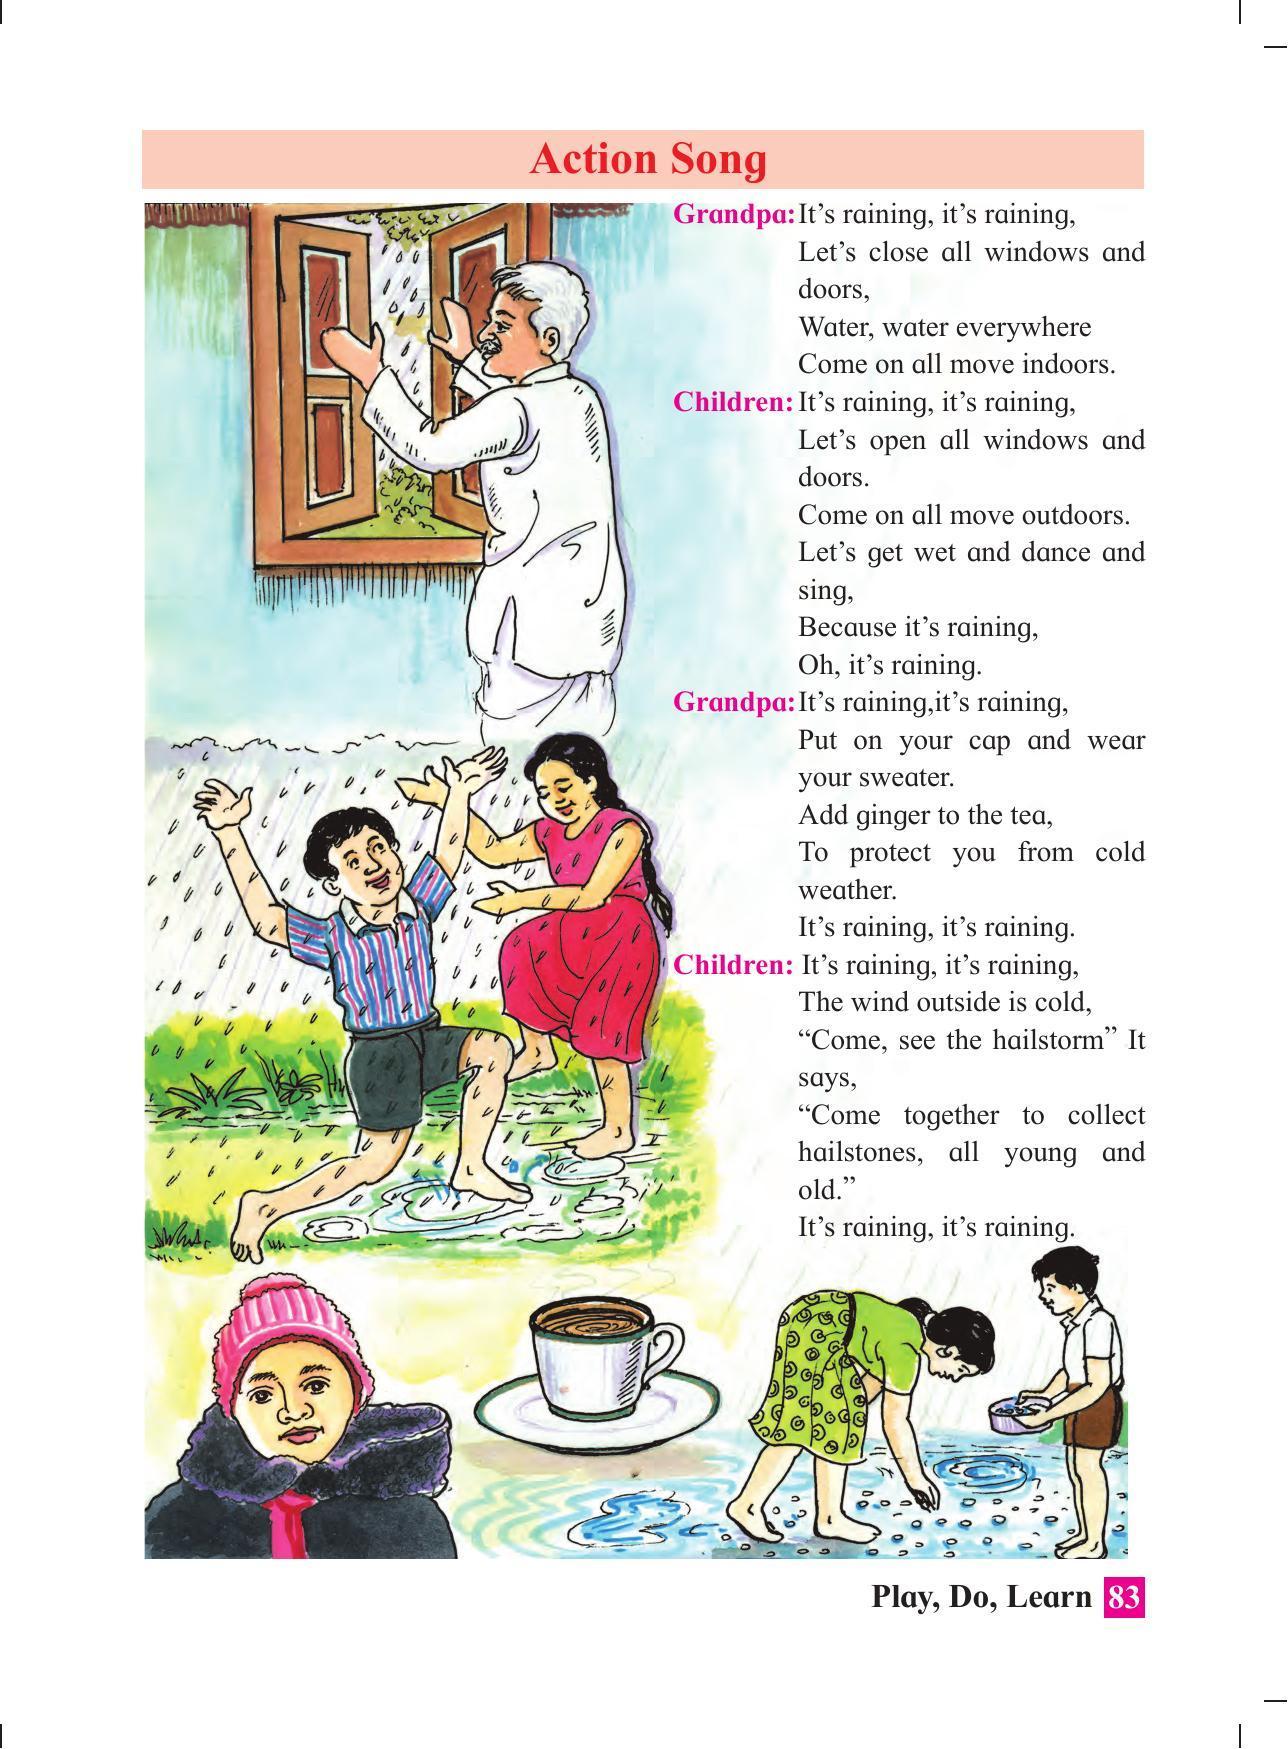 Maharashtra Board Class 4 Play Do Learn (English Medium) Textbook - Page 92